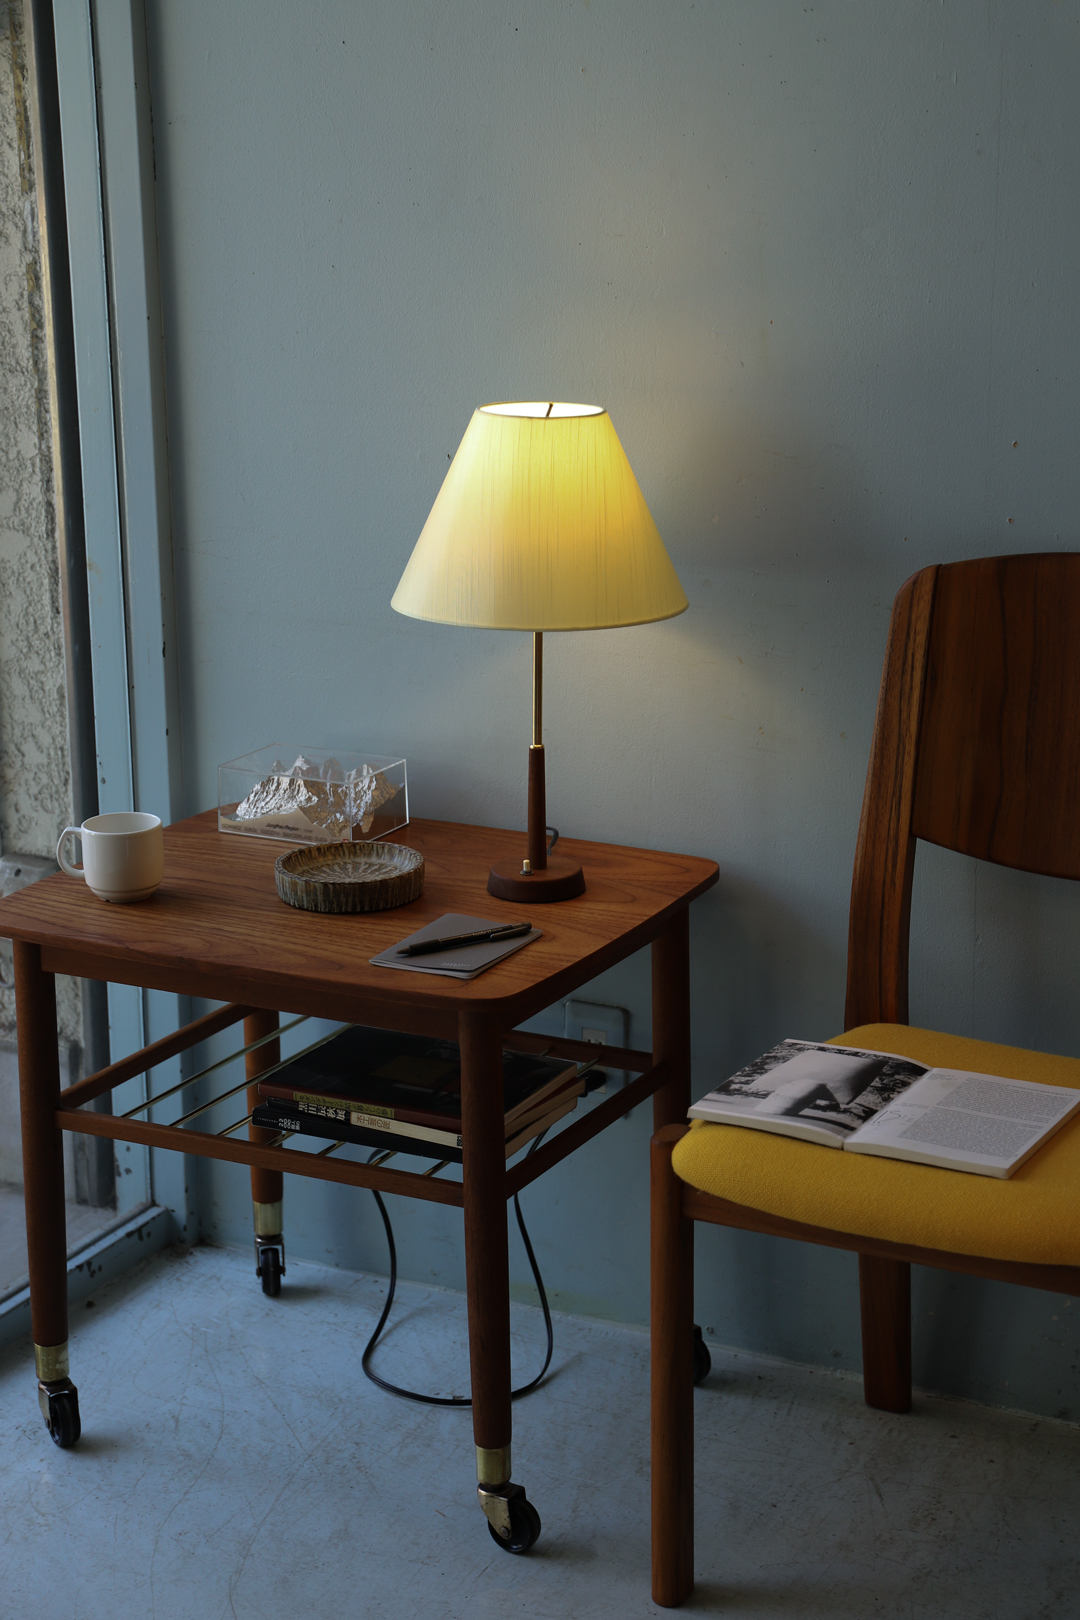 Swedish Vintage Table Lamp Midcentury Modern/スウェーデンヴィンテージ テーブルランプ 間接照明 インテリア ミッドセンチュリー 北欧デザイン